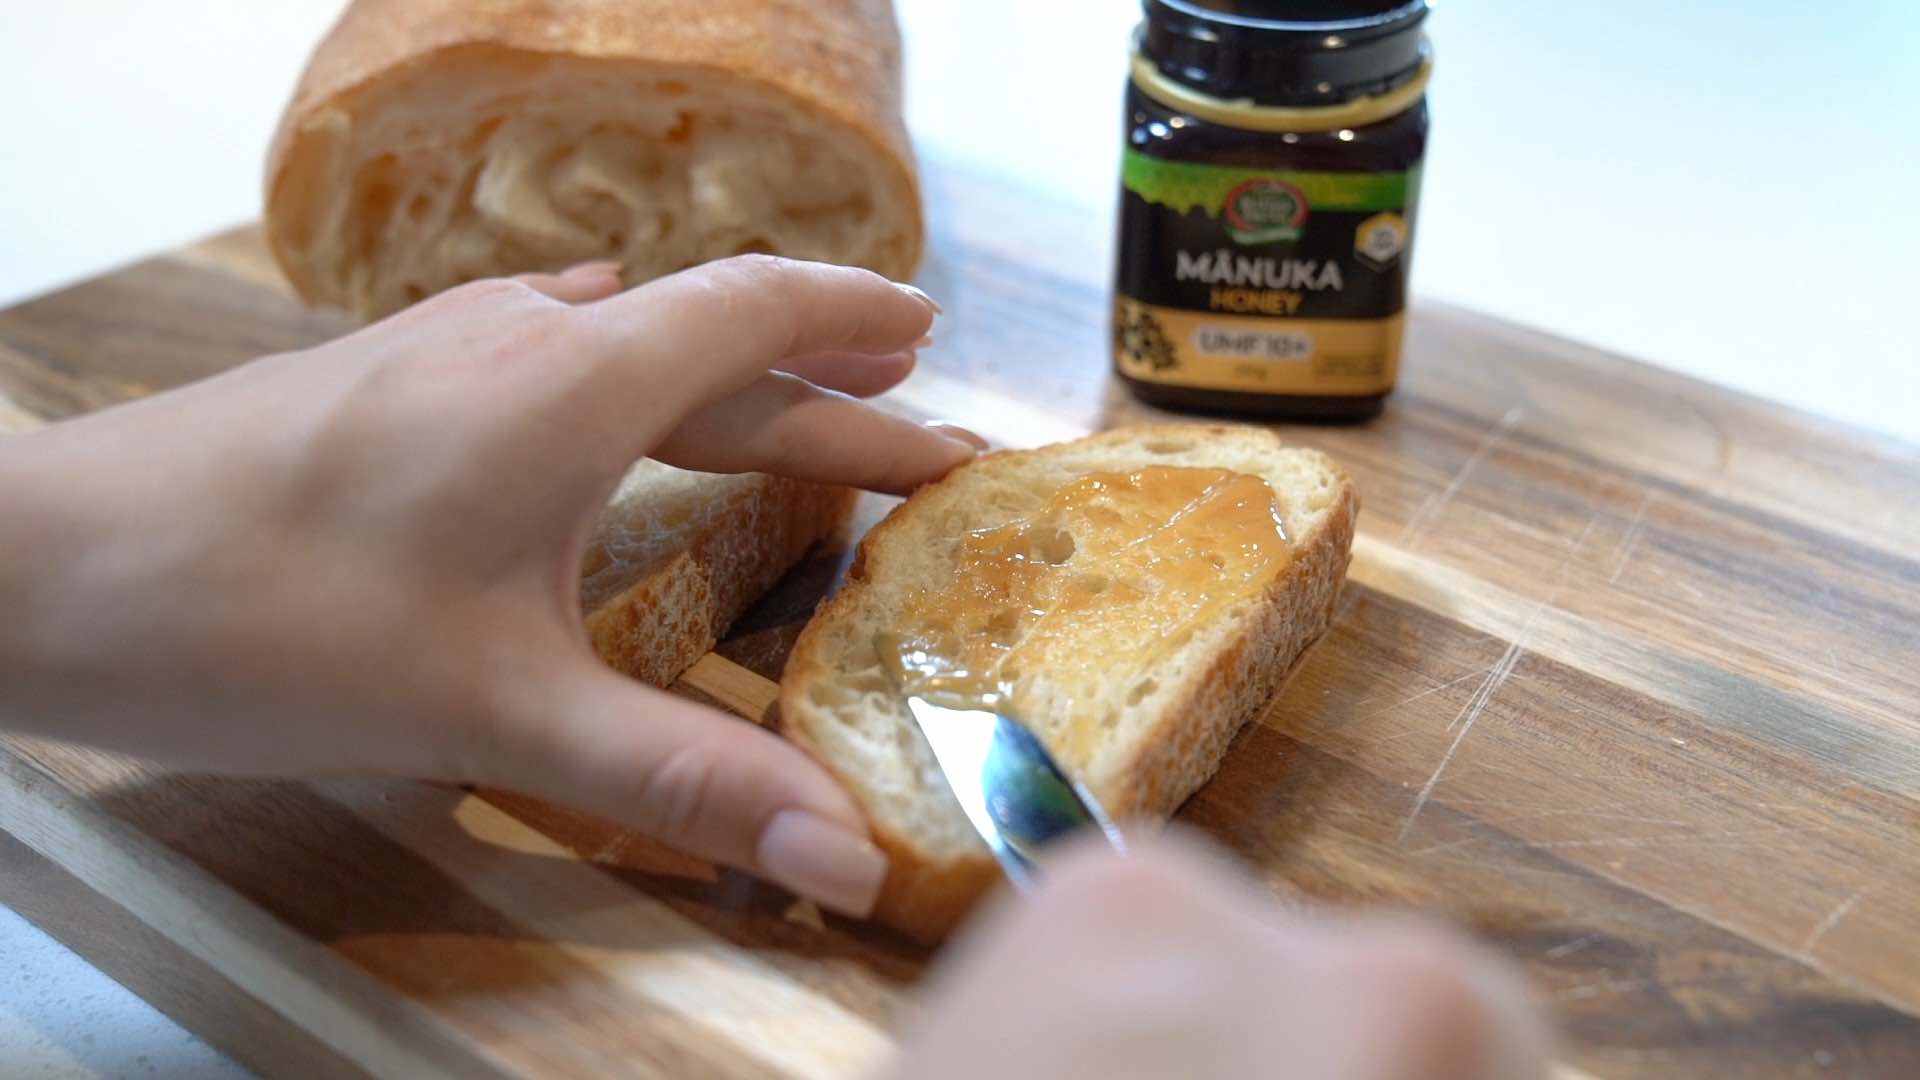 manuka honey apply on bread